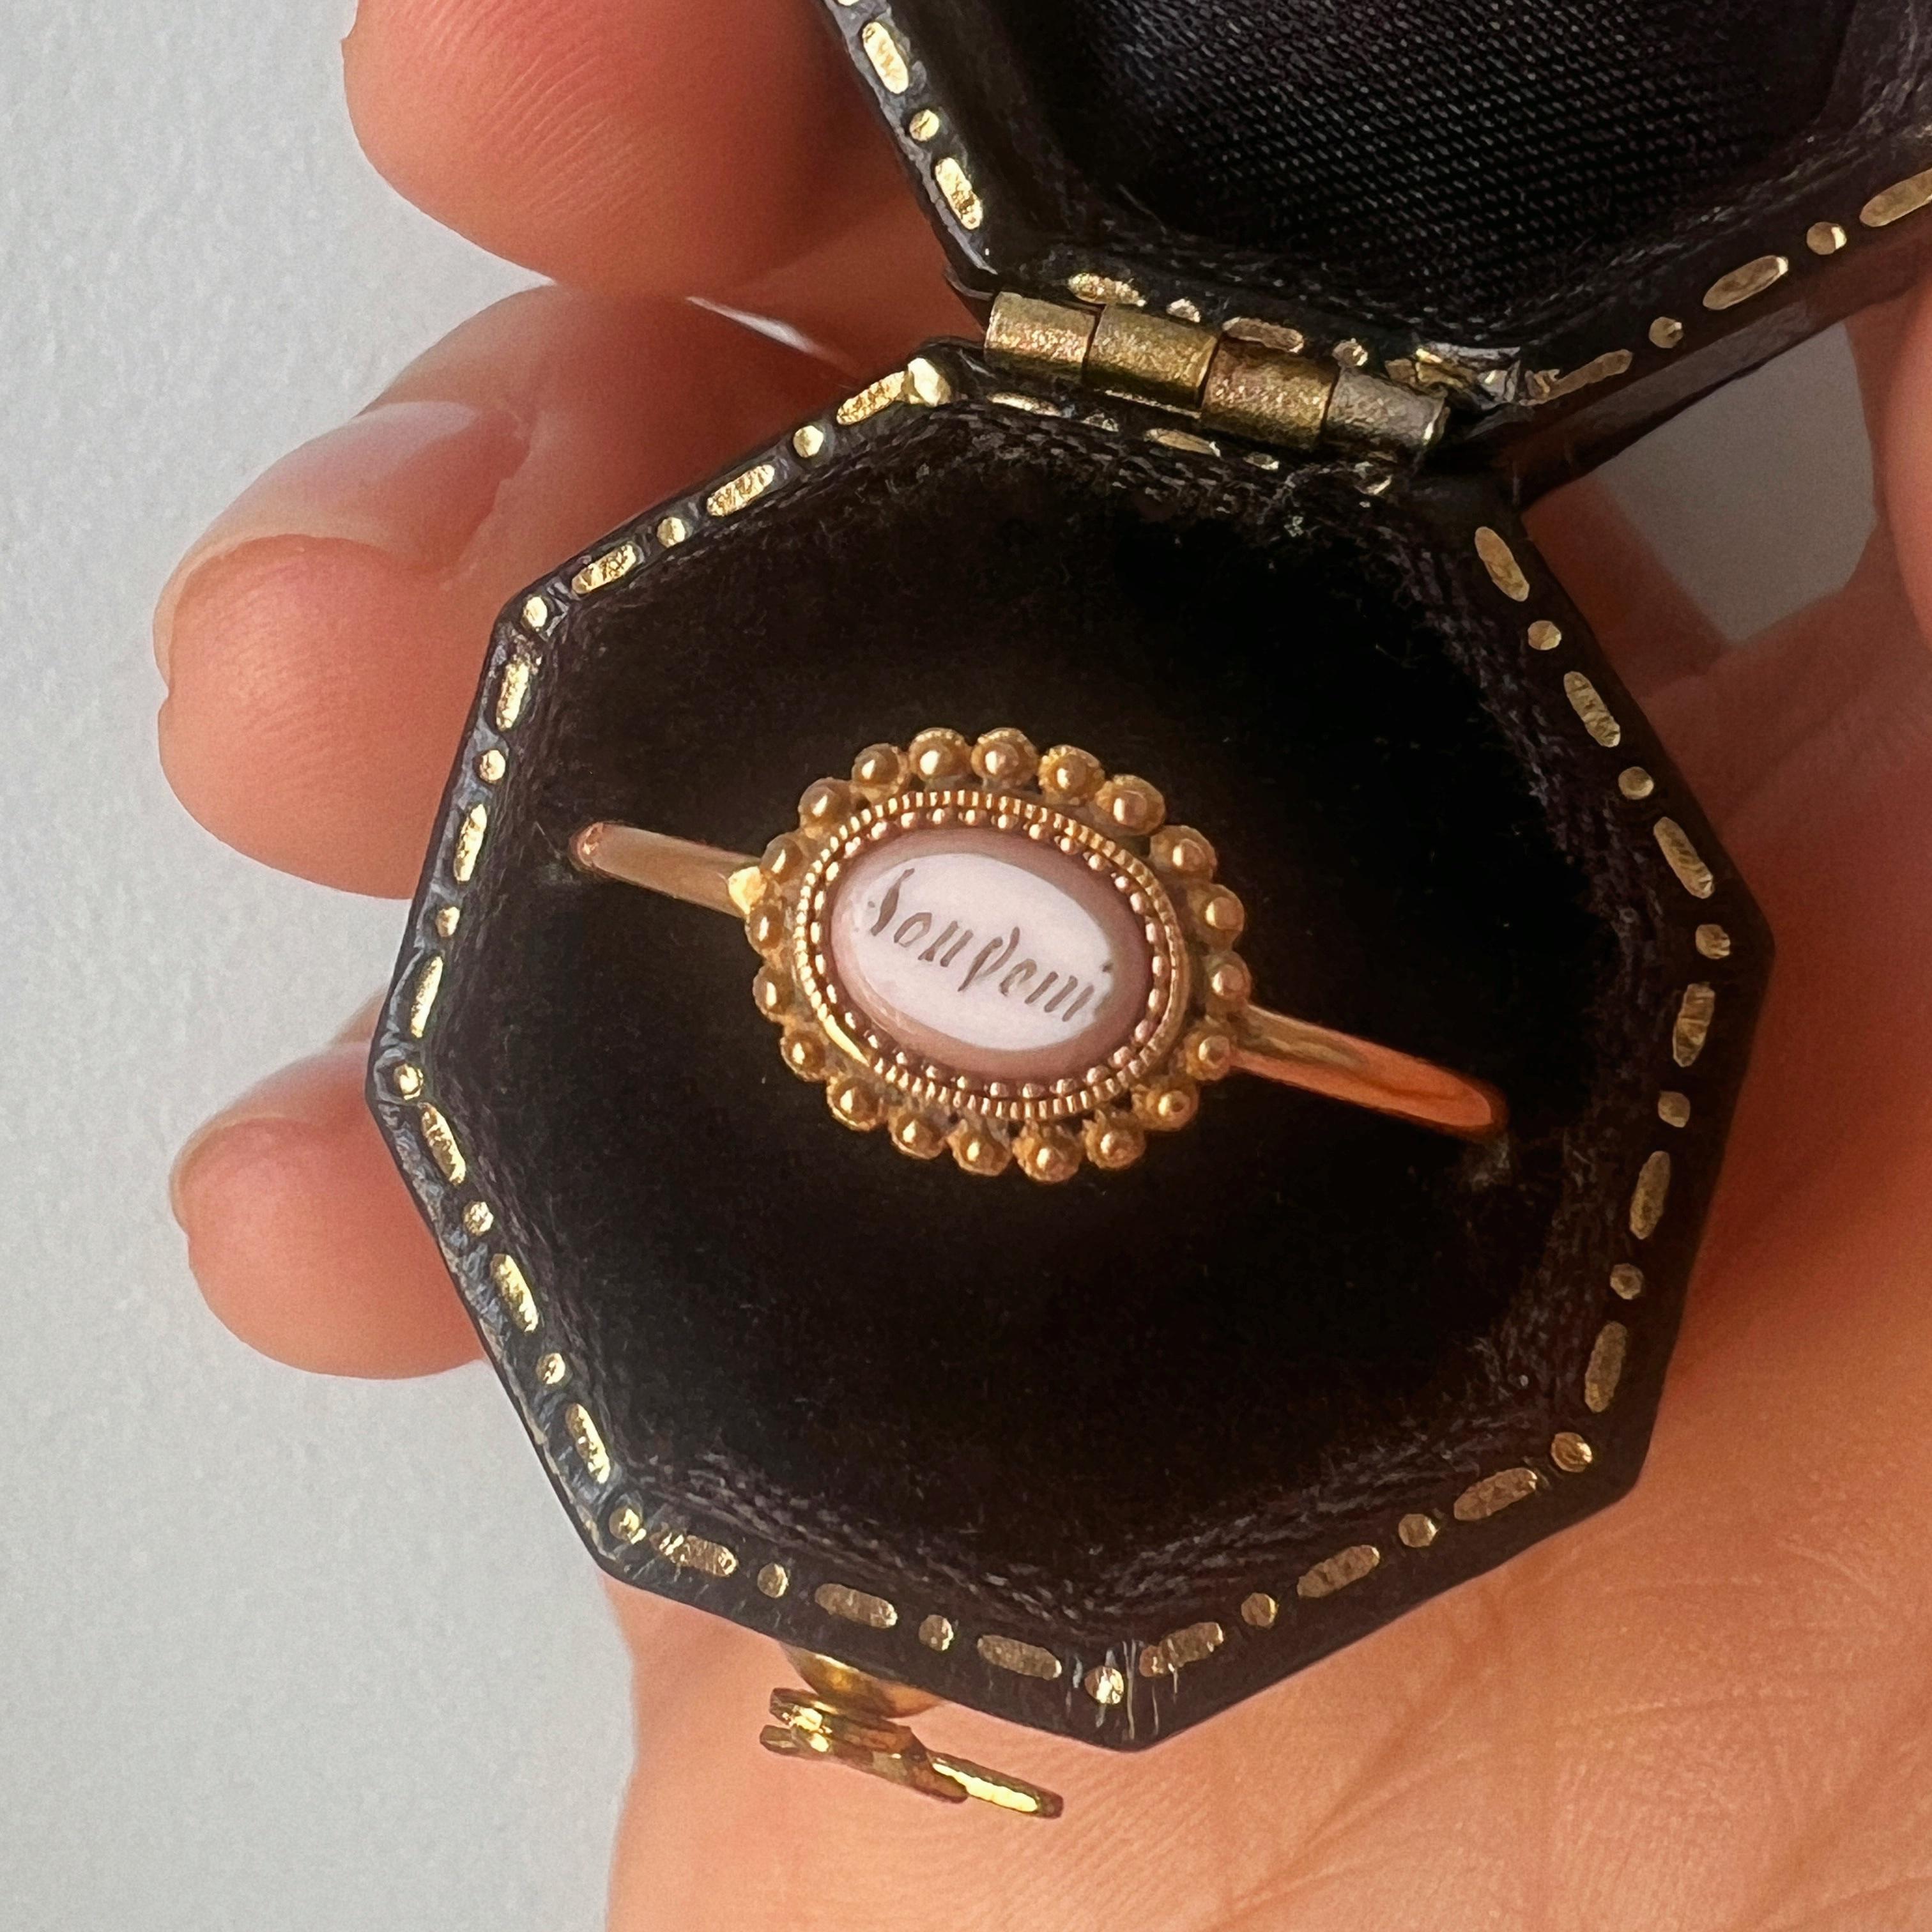 Wir stellen Ihnen ein sehr seltenes und exquisites Stück Geschichte vor: einen in Frankreich gefertigten Ring aus 18-karätigem Gold der georgischen Epoche, der mit einer Emailleplatte verziert ist, auf der das Wort 